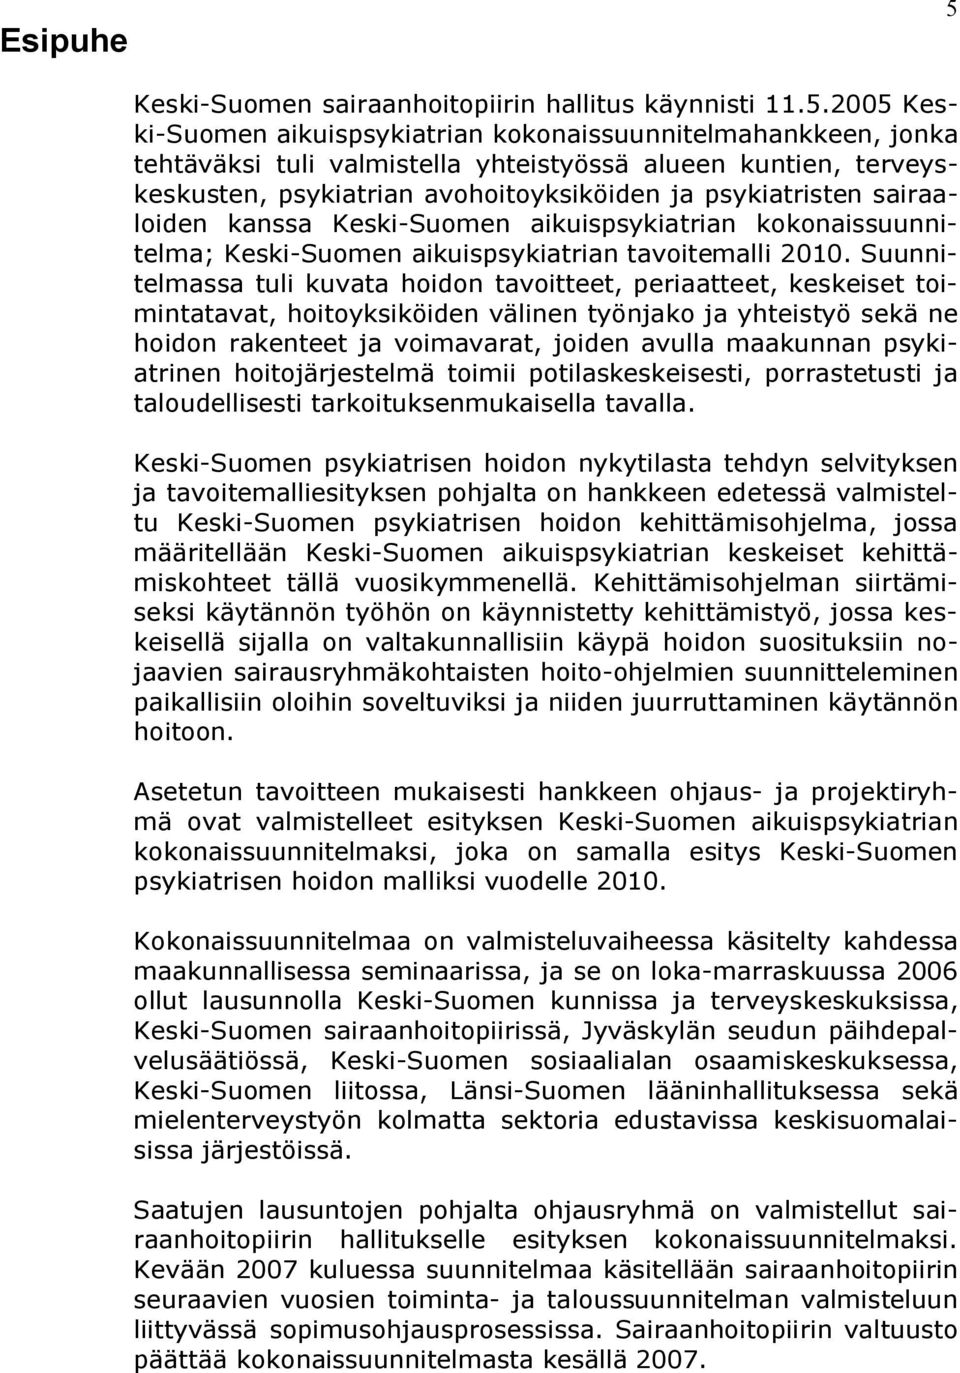 2005 Keski Suomen aikuispsykiatrian kokonaissuunnitelmahankkeen, jonka tehtäväksi tuli valmistella yhteistyössä alueen kuntien, terveyskeskusten, psykiatrian avohoitoyksiköiden ja psykiatristen